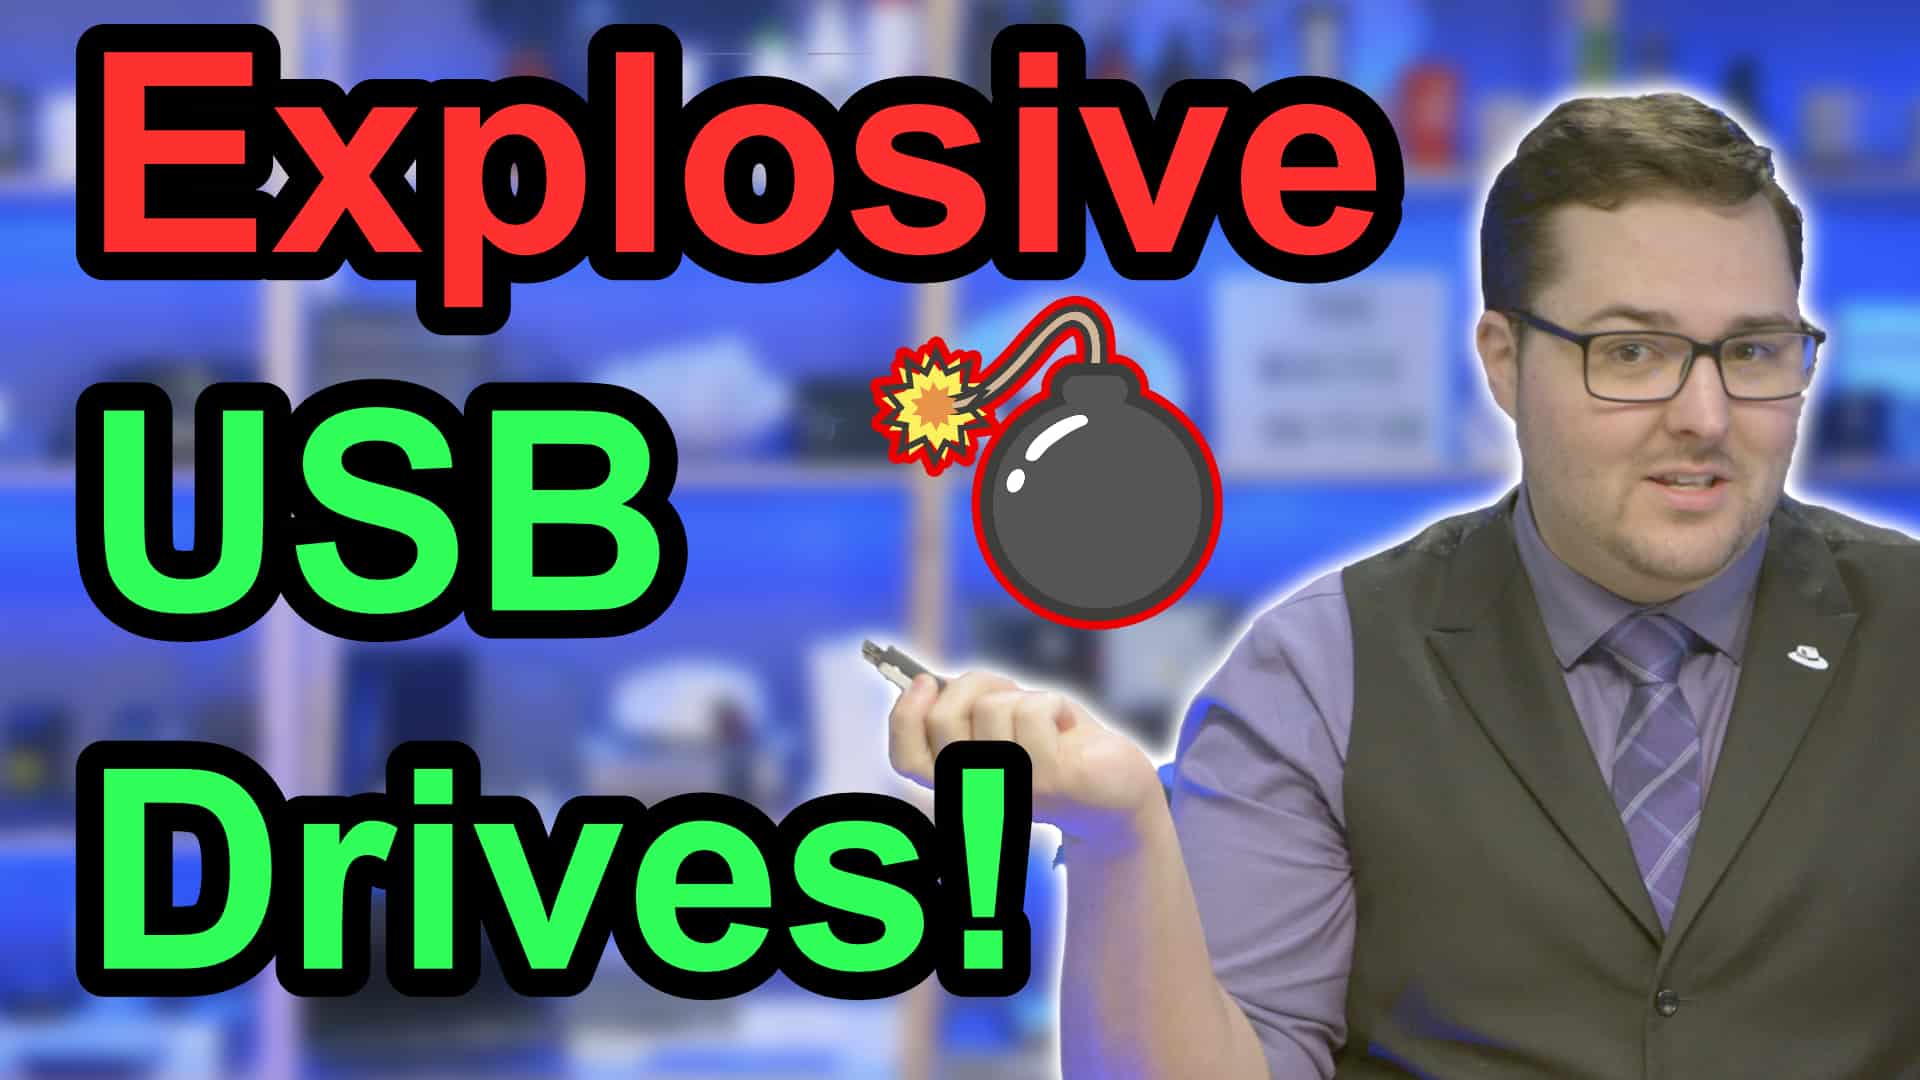 YouTube Show Explosive USB Drives thumbnail